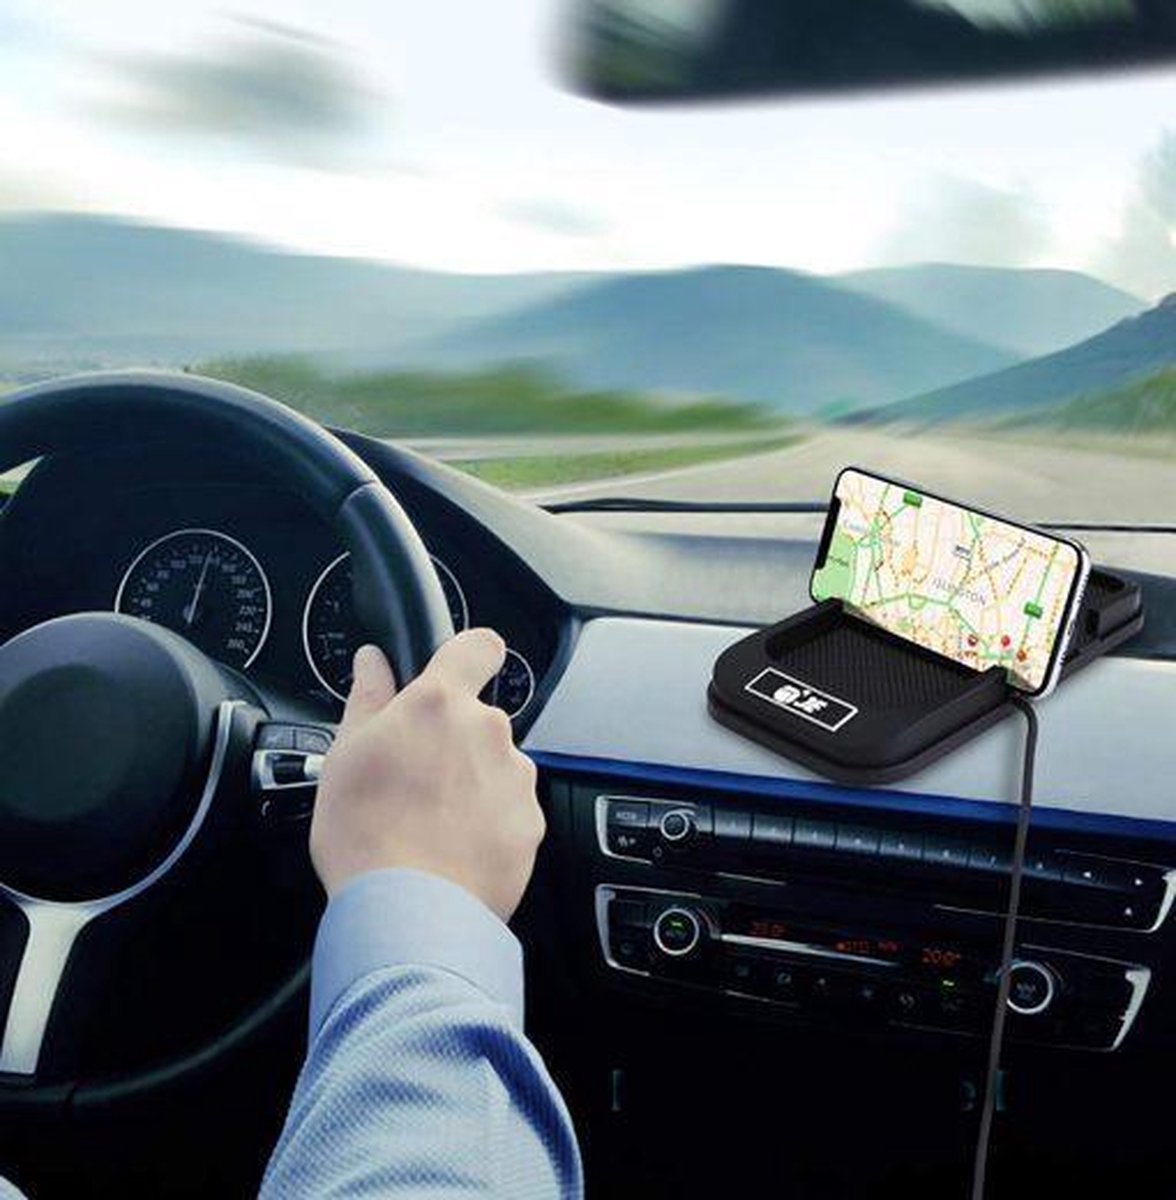 Qi draadloze Snelle Oplaadmat en Telefoon-Navigatiehouder voor in de auto |  bol.com